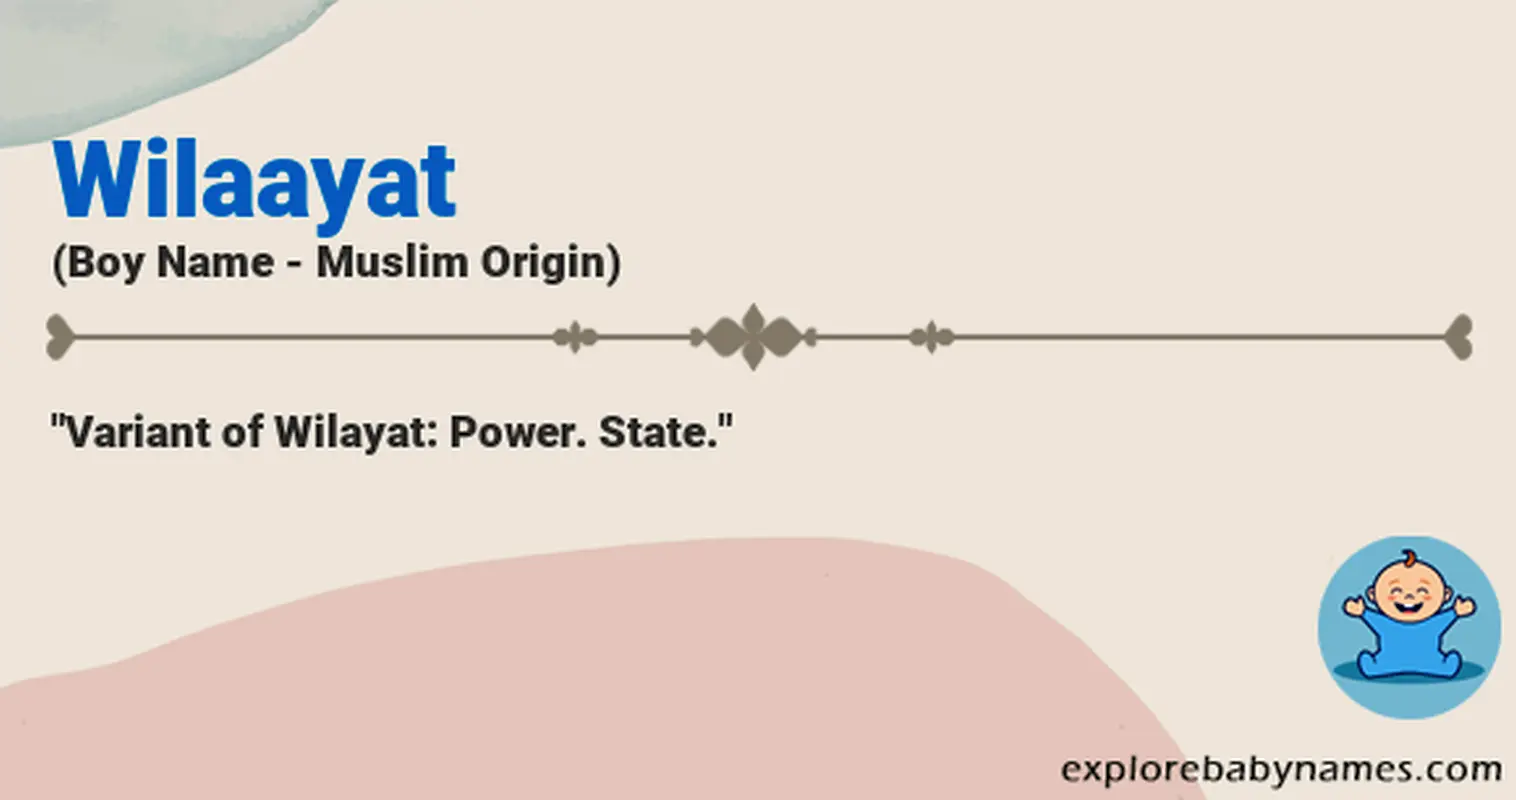 Meaning of Wilaayat